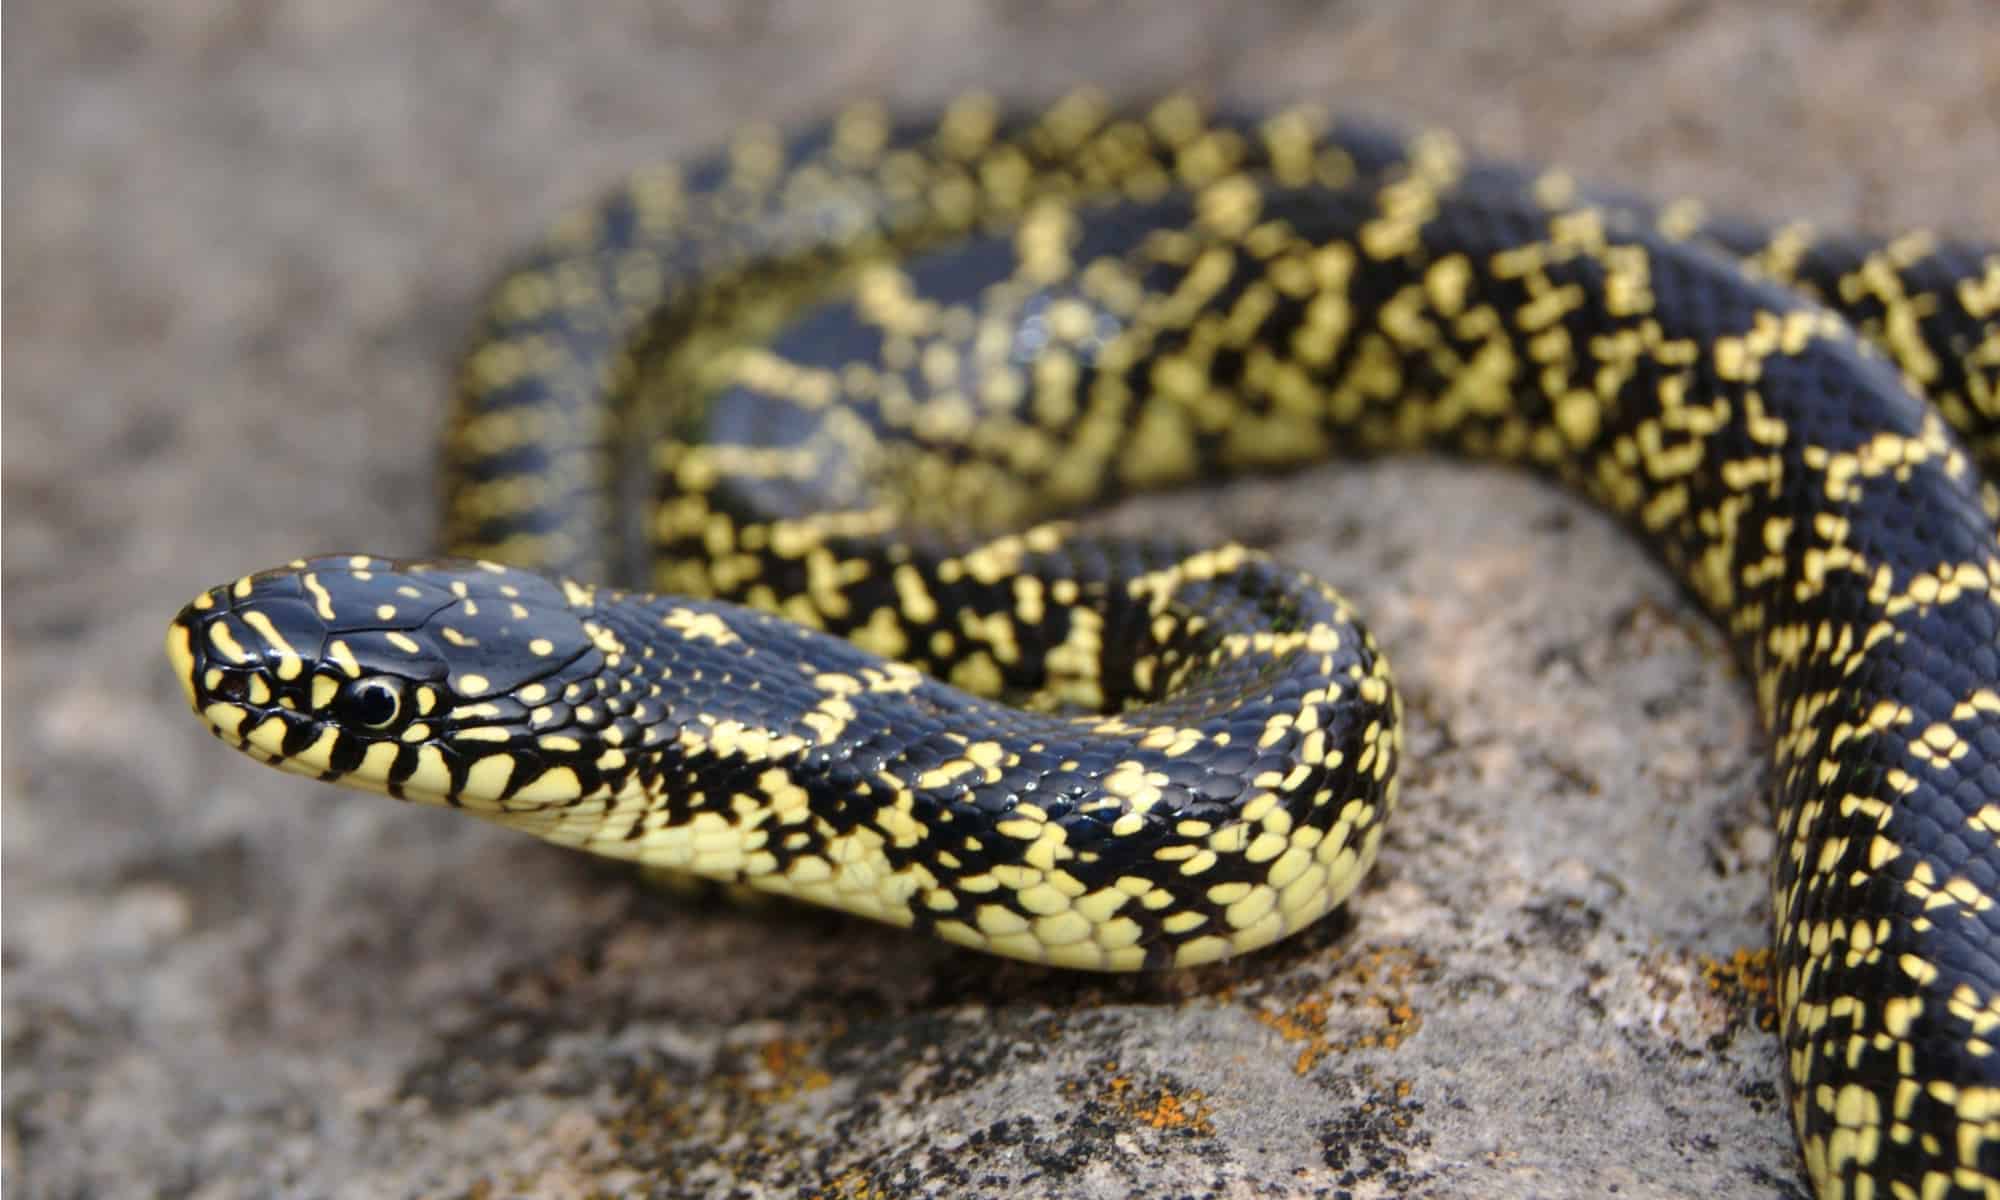 high yellow king snake